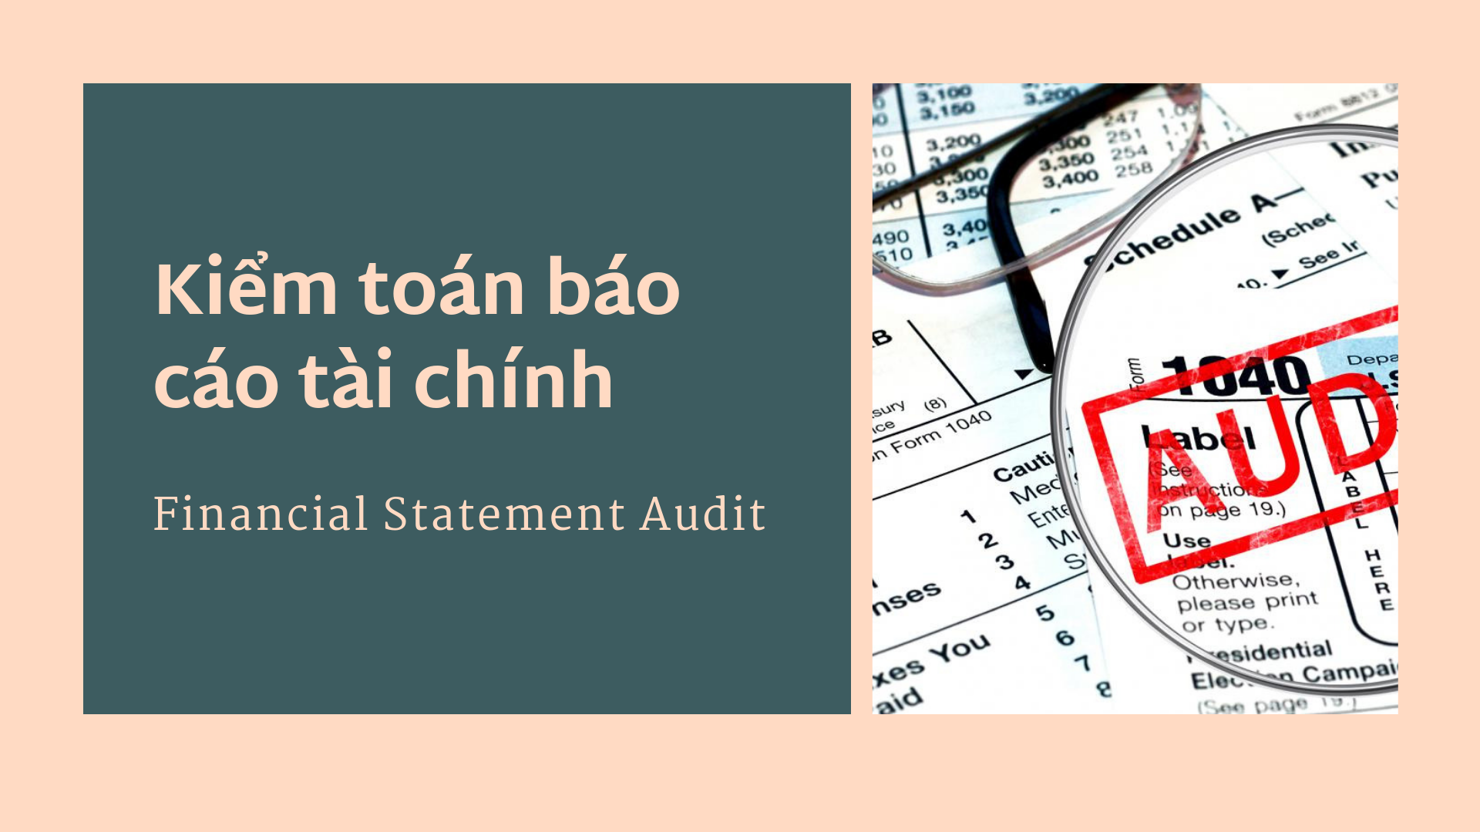 Giảm thiểu tối đa việc điều chỉnh báo cáo tài chính sau kiểm toán.